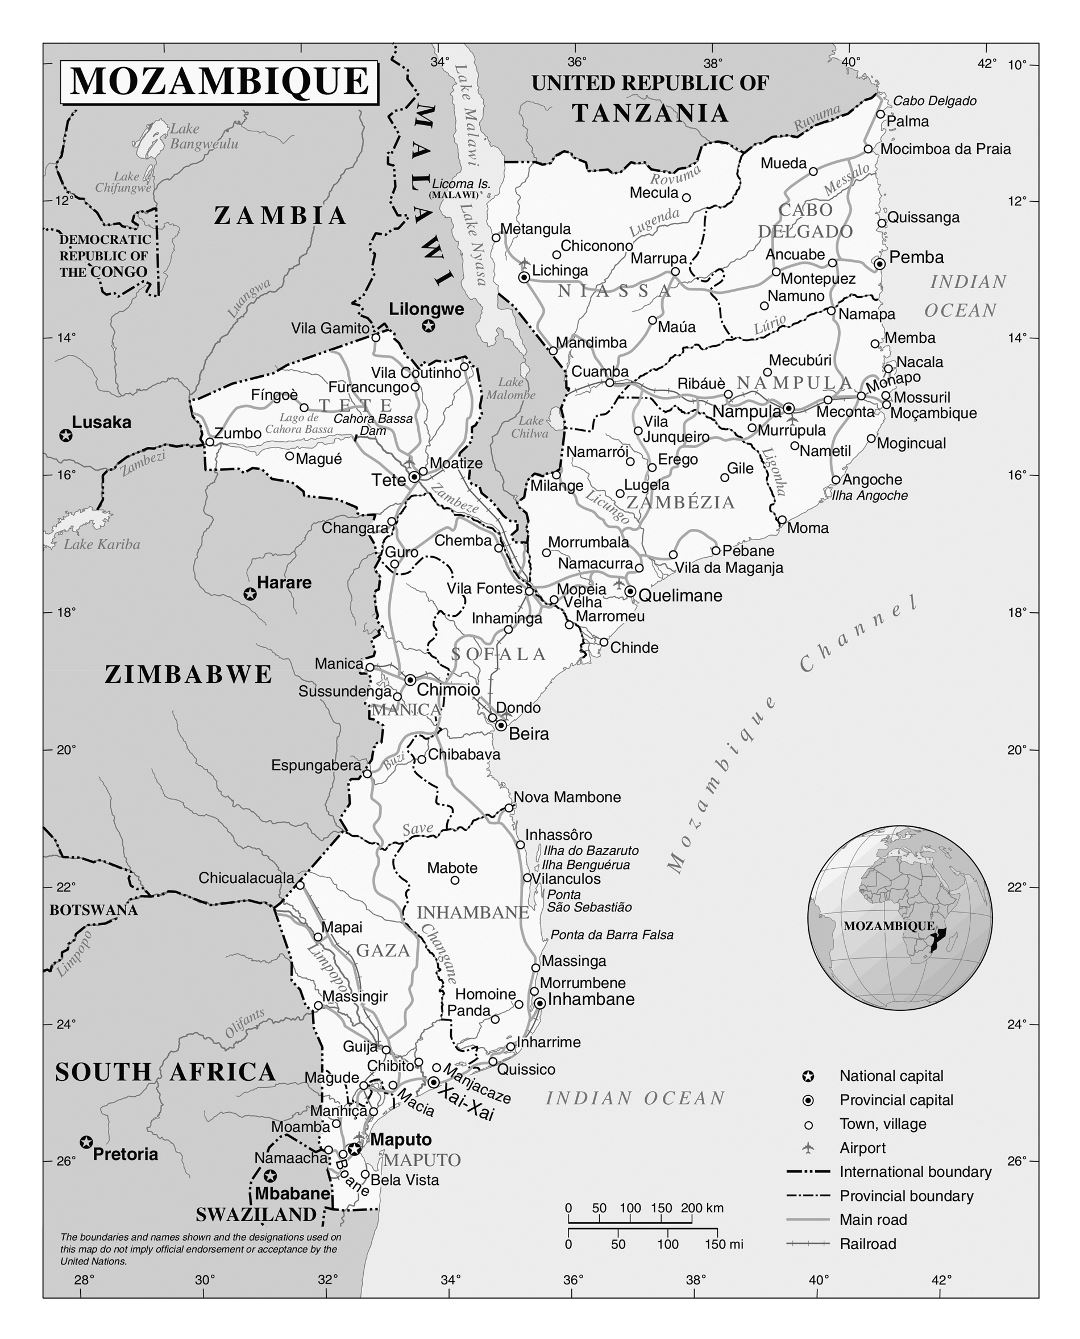 Большая детальная политическая и административная карта Мозамбика со всеми дорогами, железными дорогами, городами и аэропортами